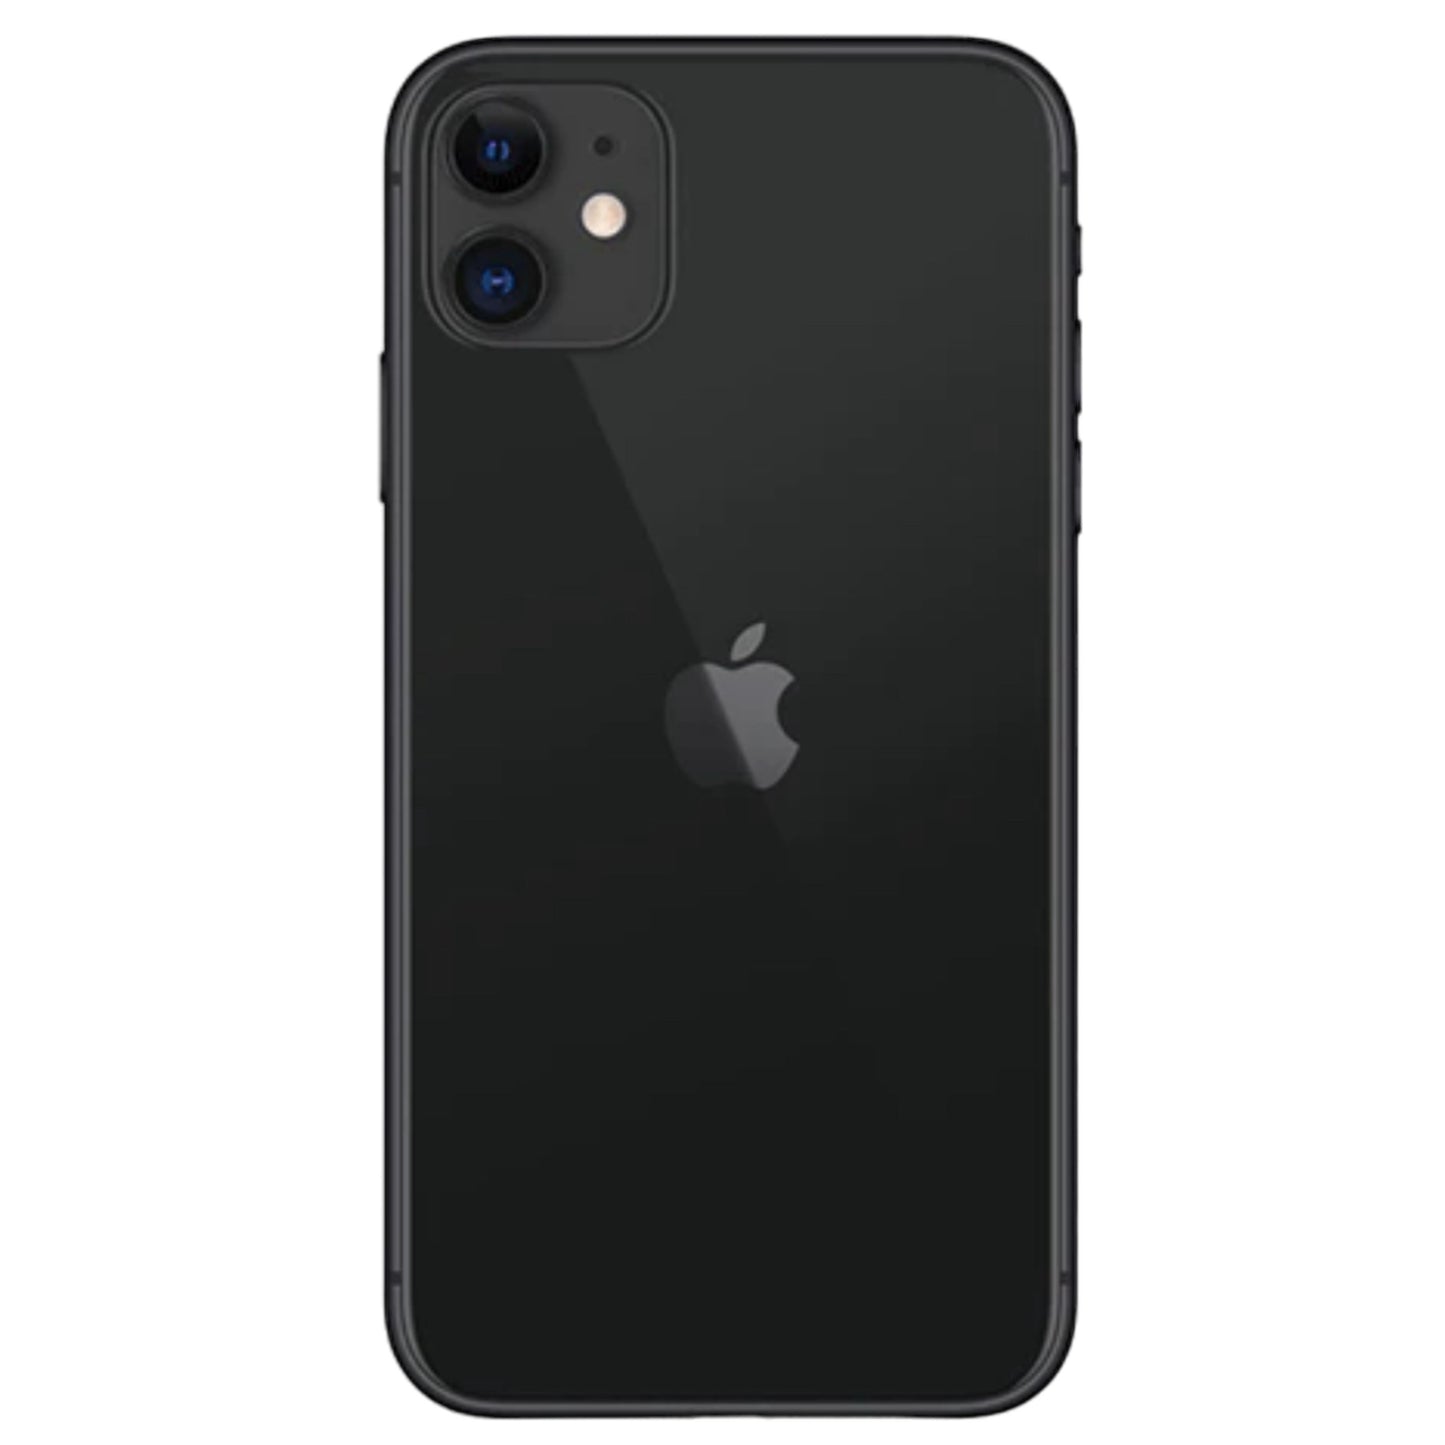 iPhone 11 Black 128GB (Unlocked) Pre-Owned